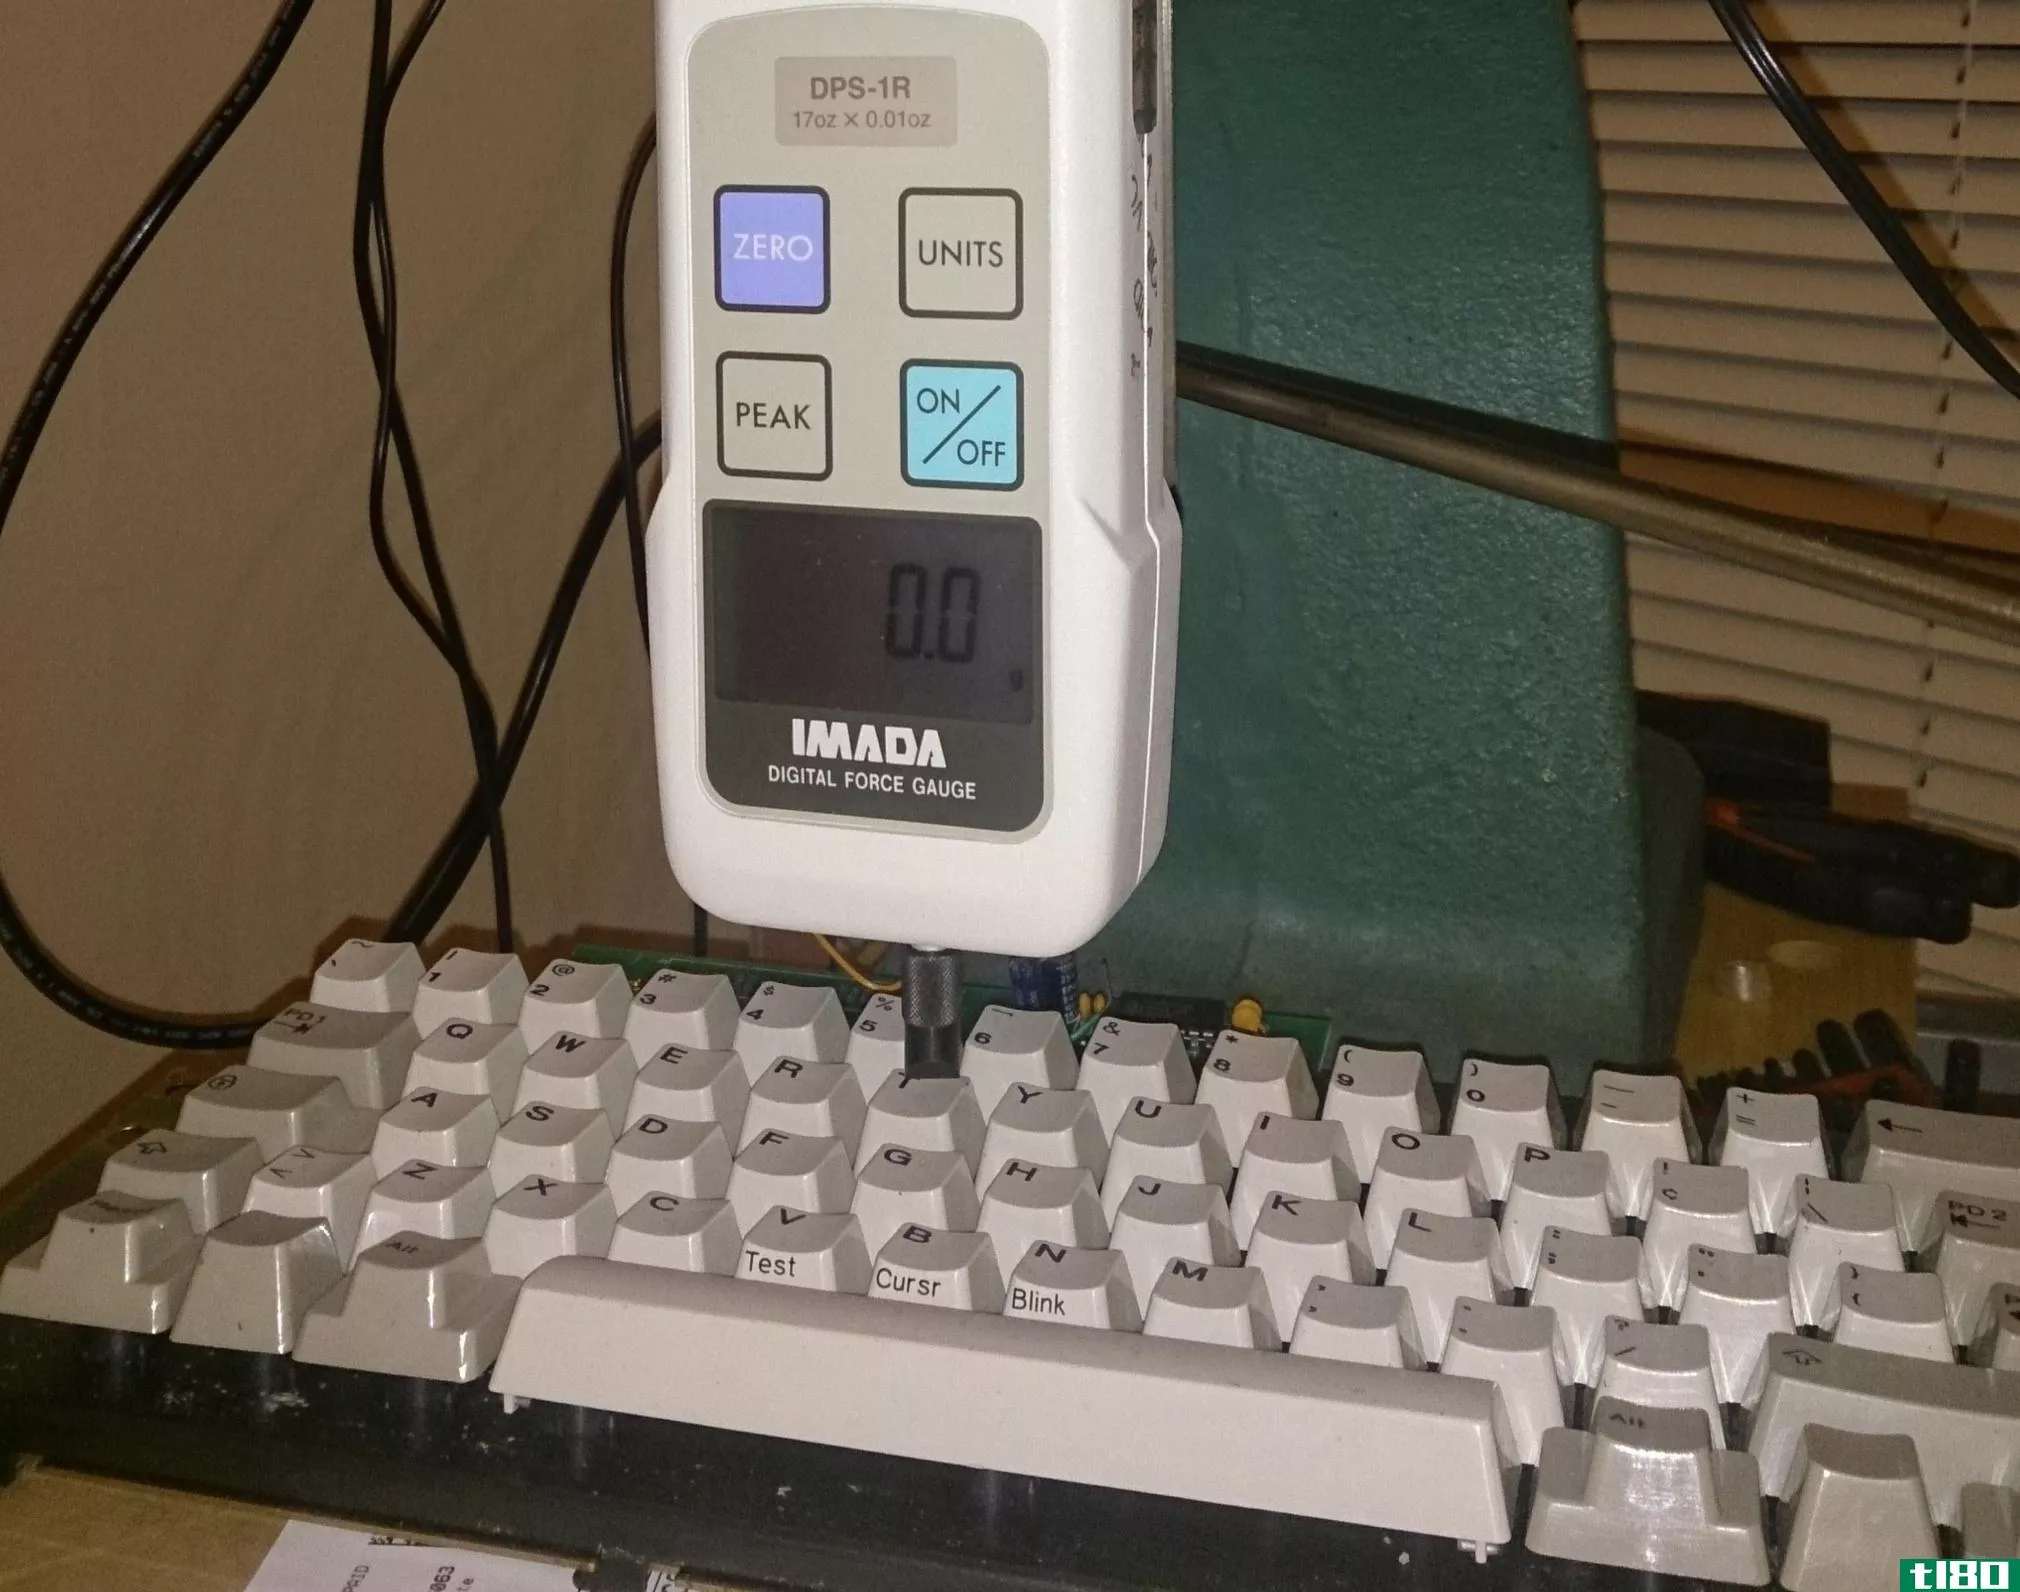 有人花了四年多的时间和1000美元建造了一台完美的键盘点击测试机